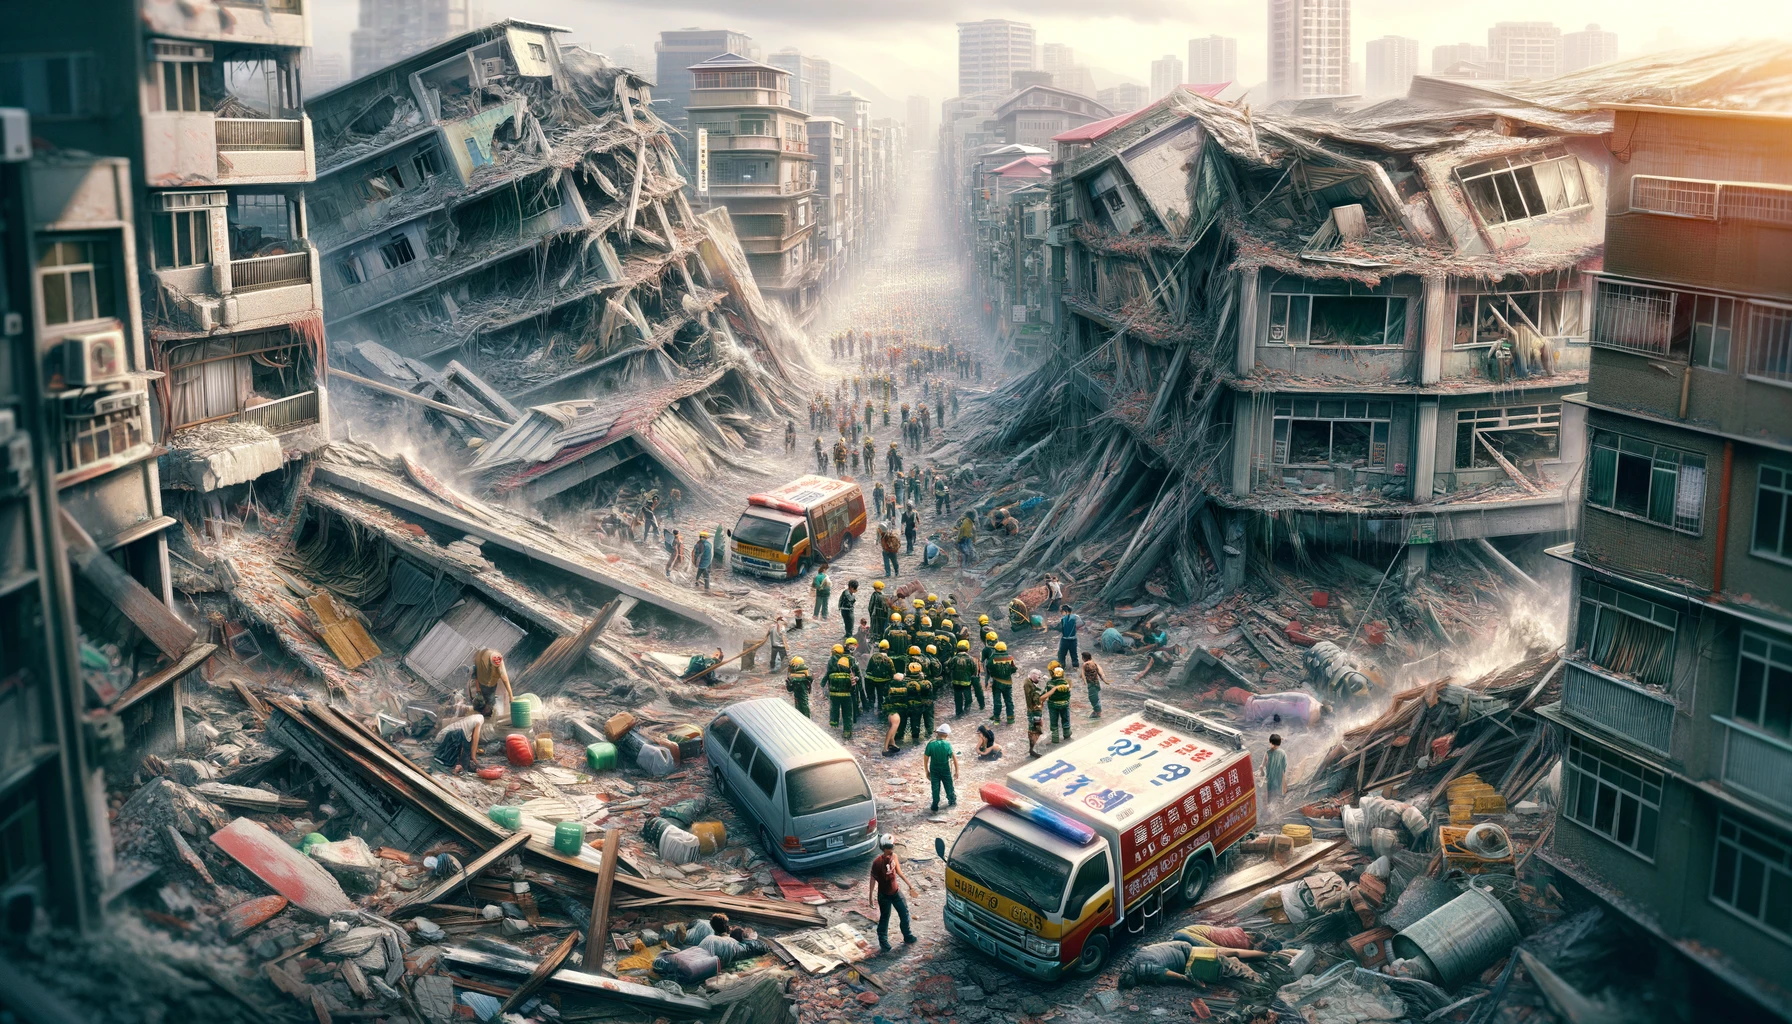 Séisme à Taïwan : destructions massives et lourd bilan humain